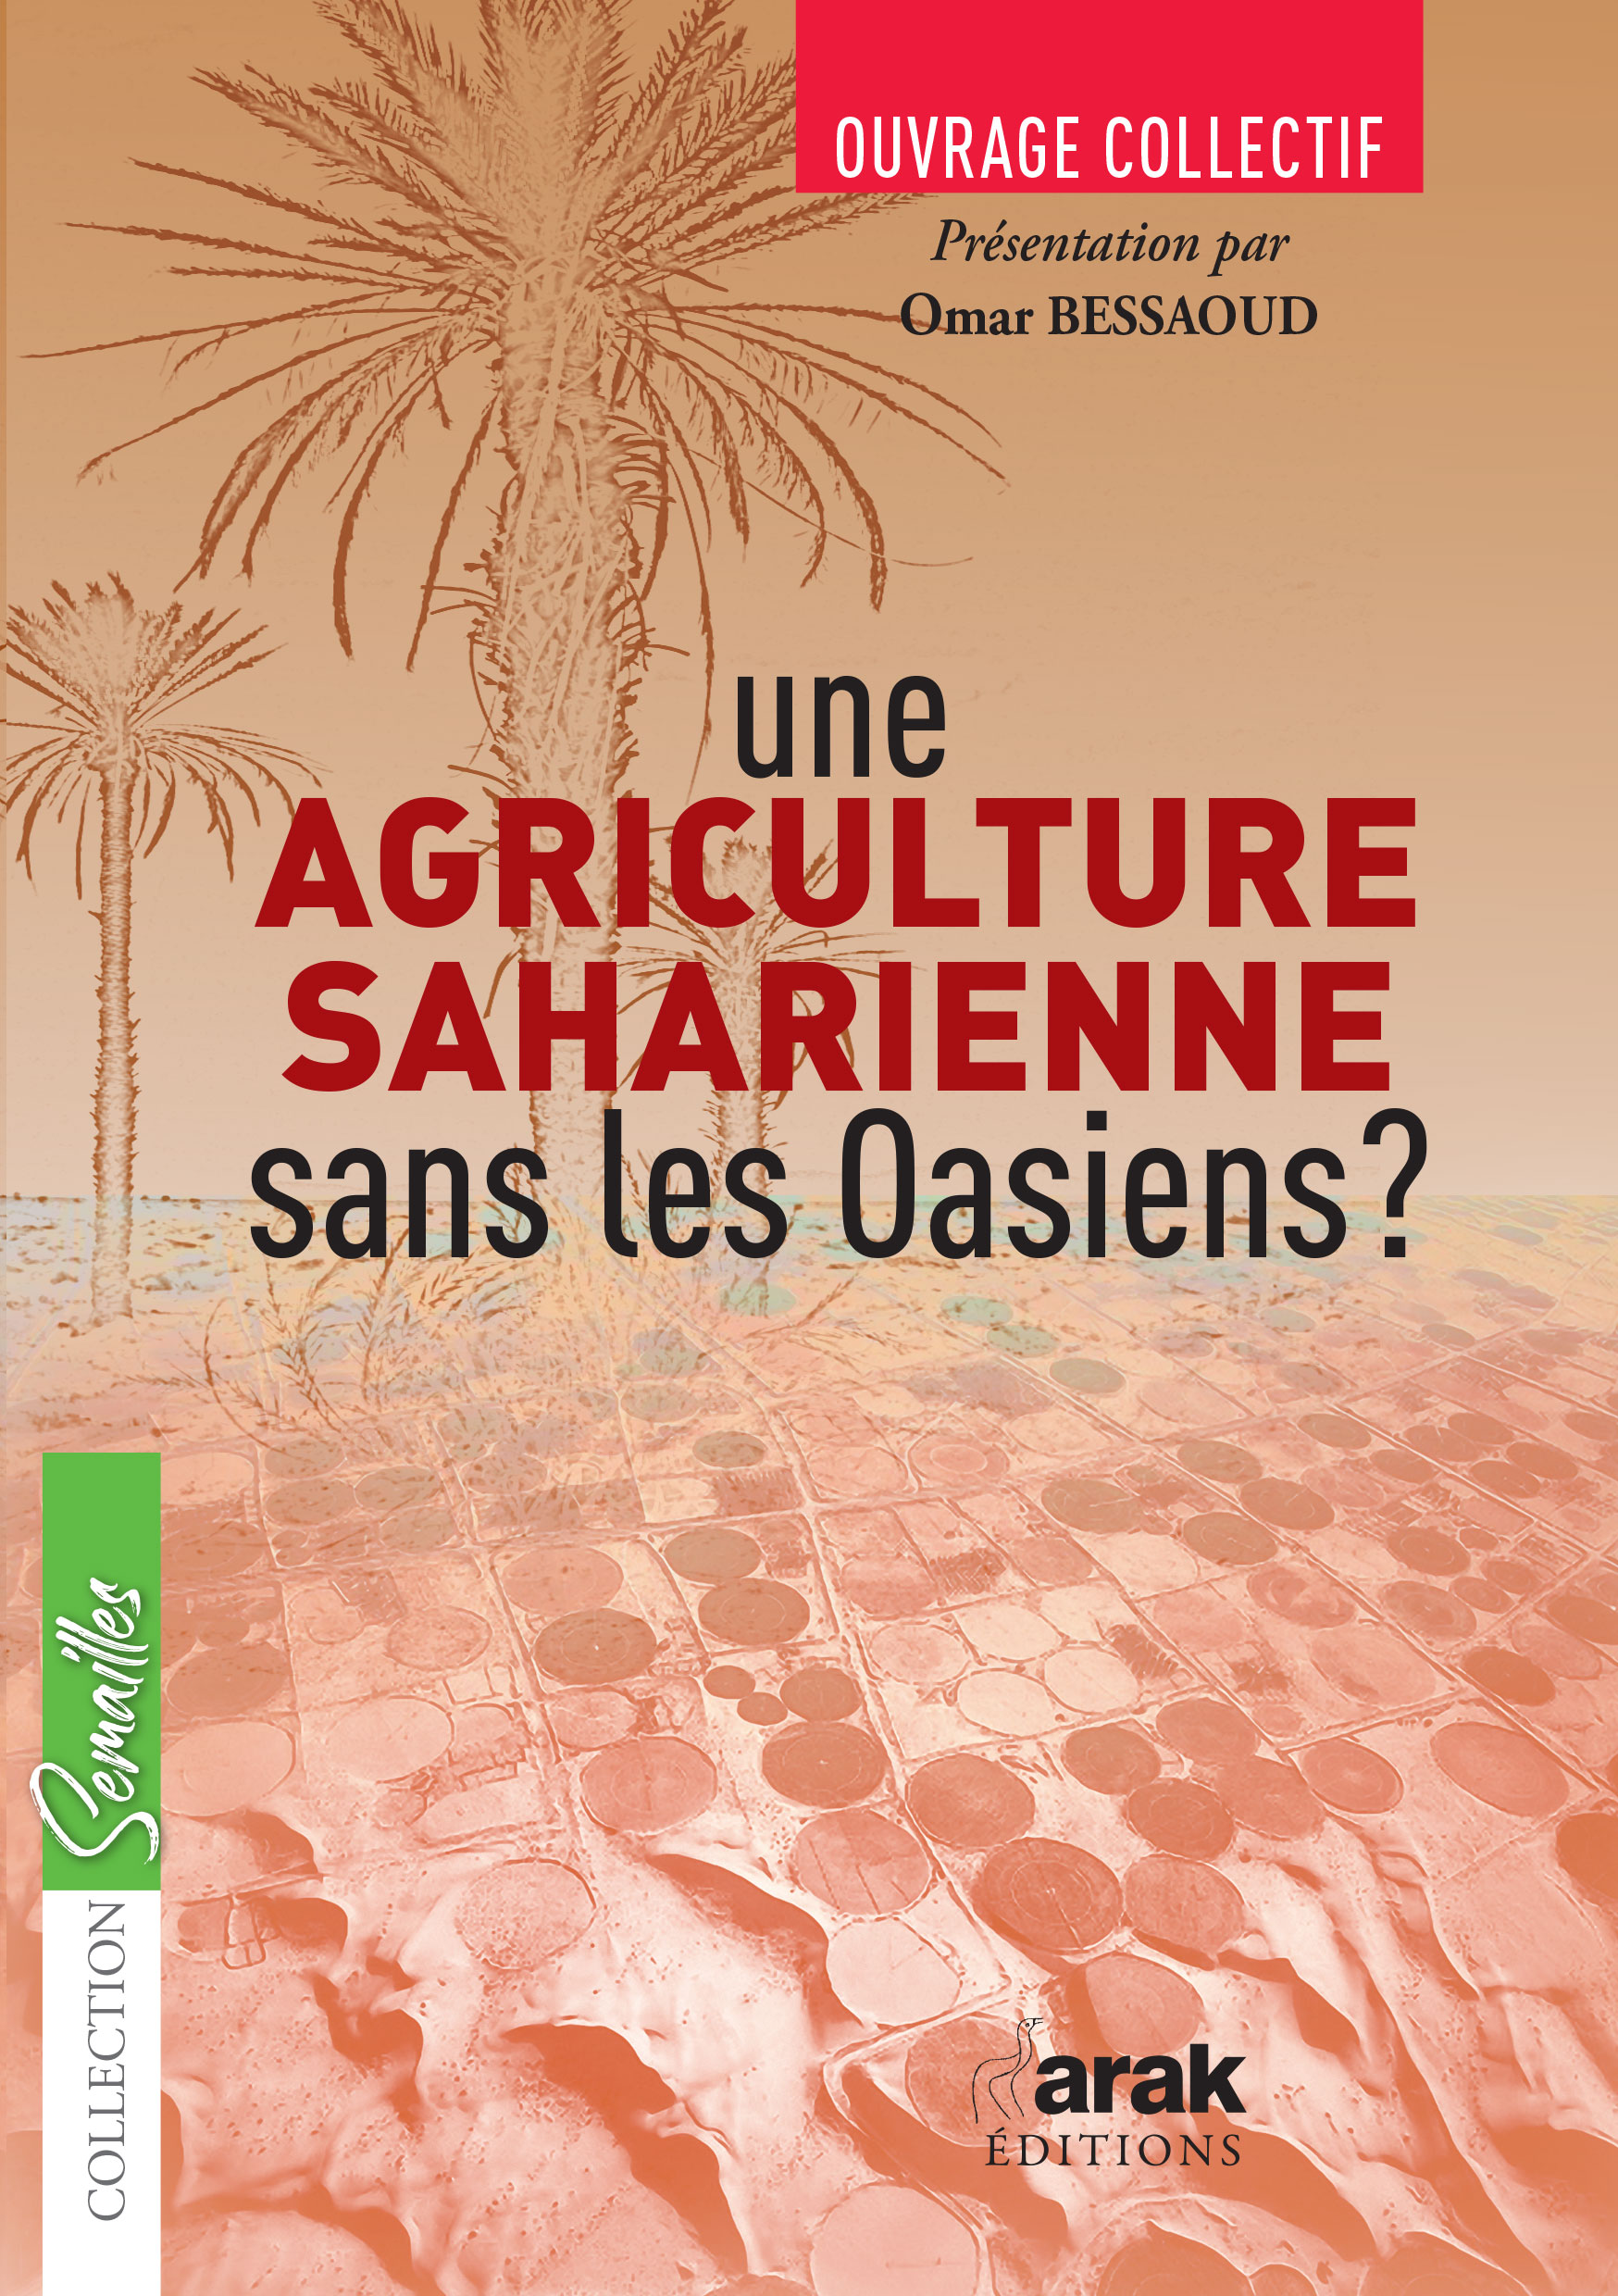 Parution d’un ouvrage sur l’agriculture saharienne